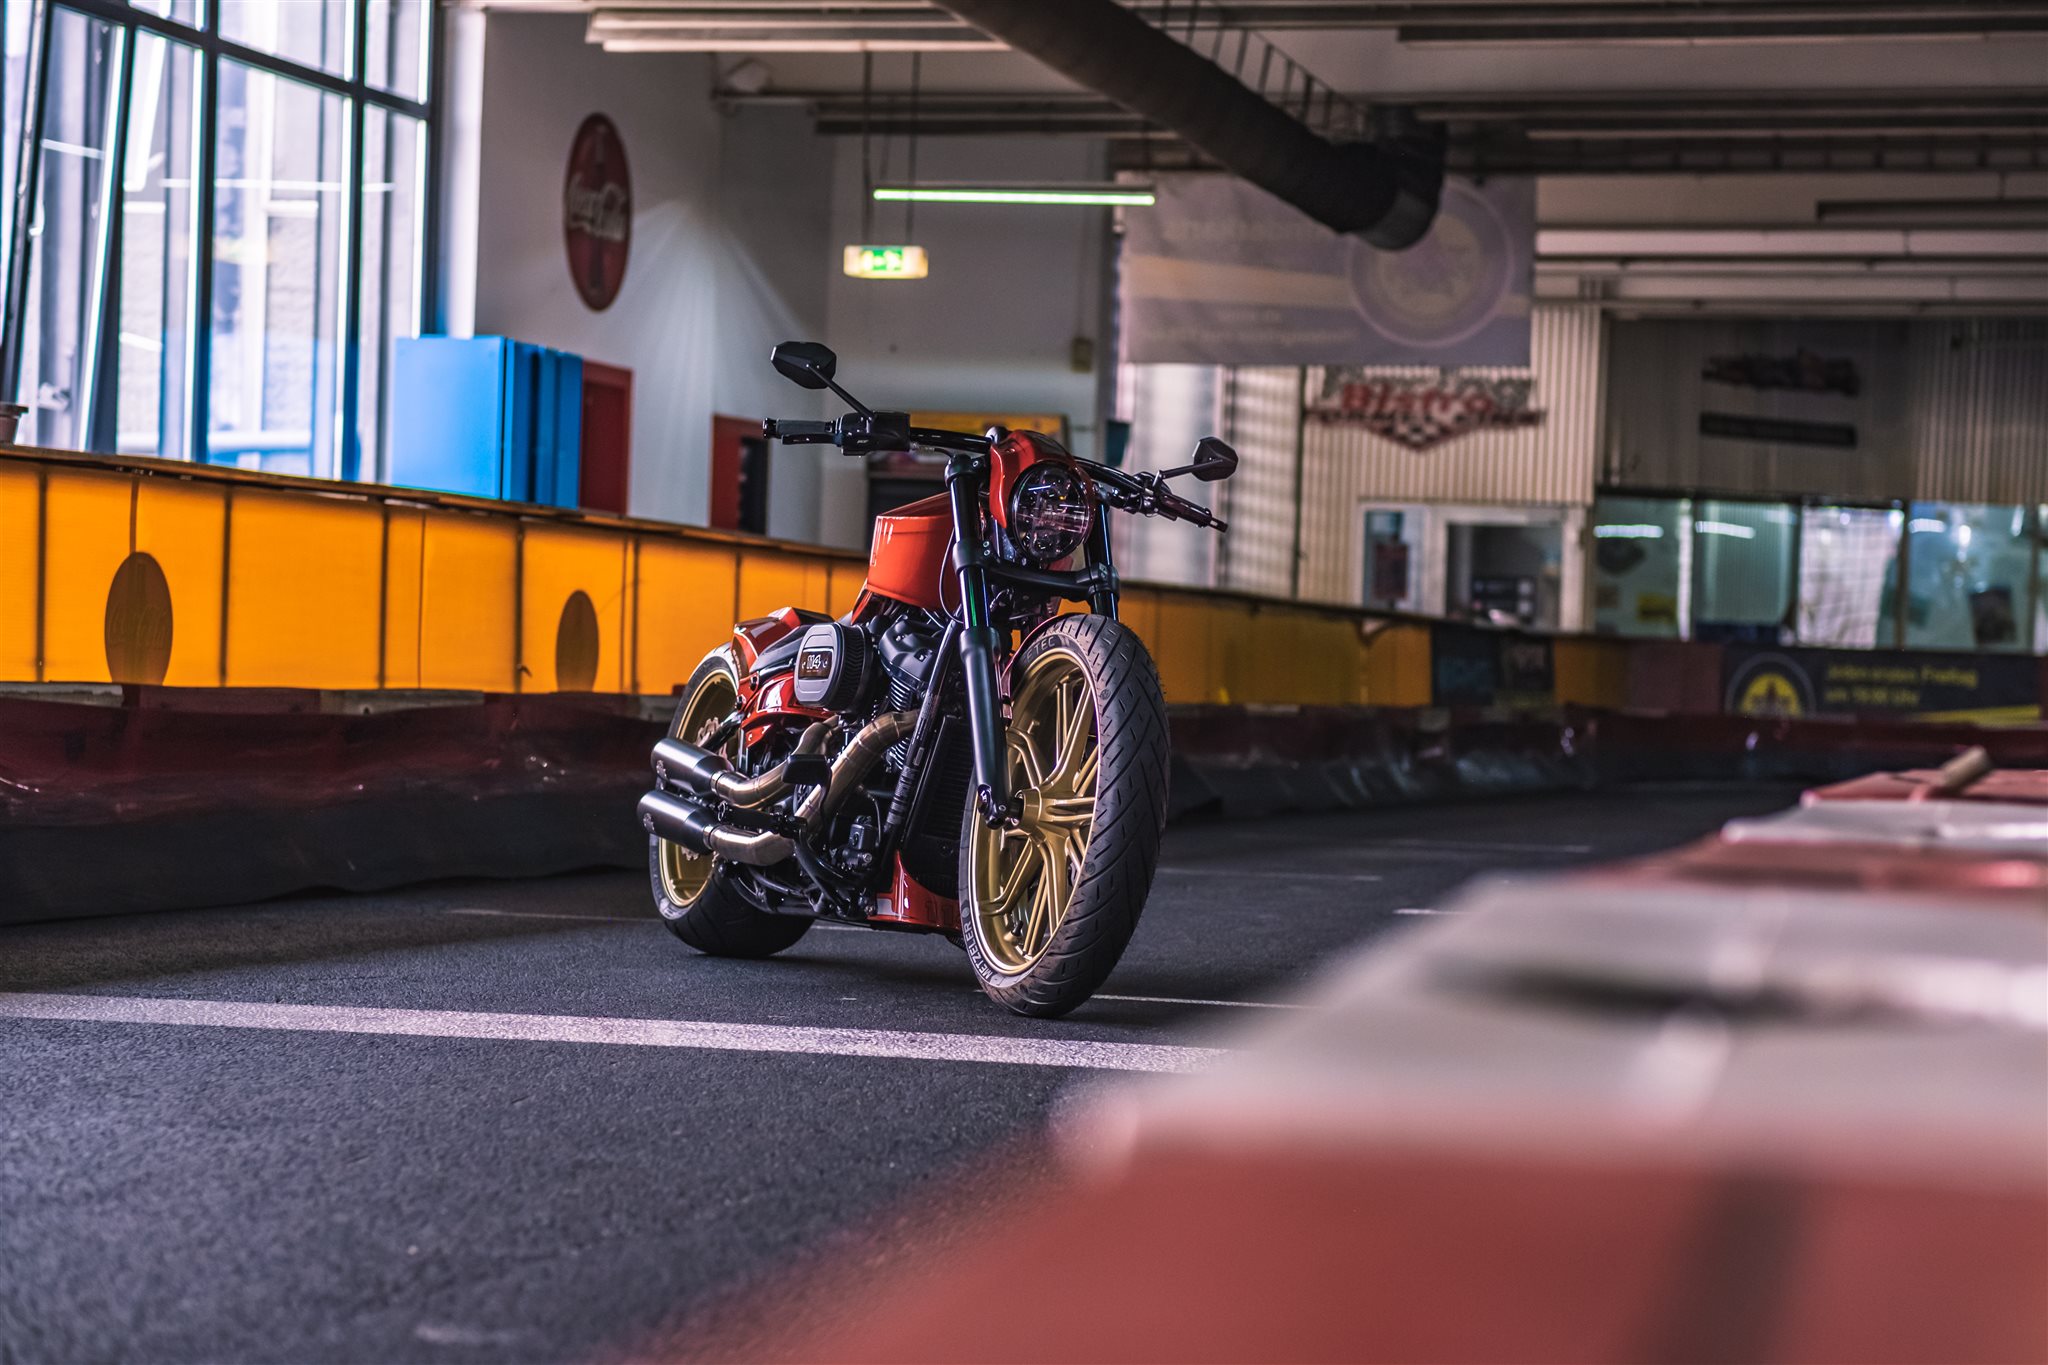 Gabelstandrohre für Harley-Davidson im Thunderbike Shop